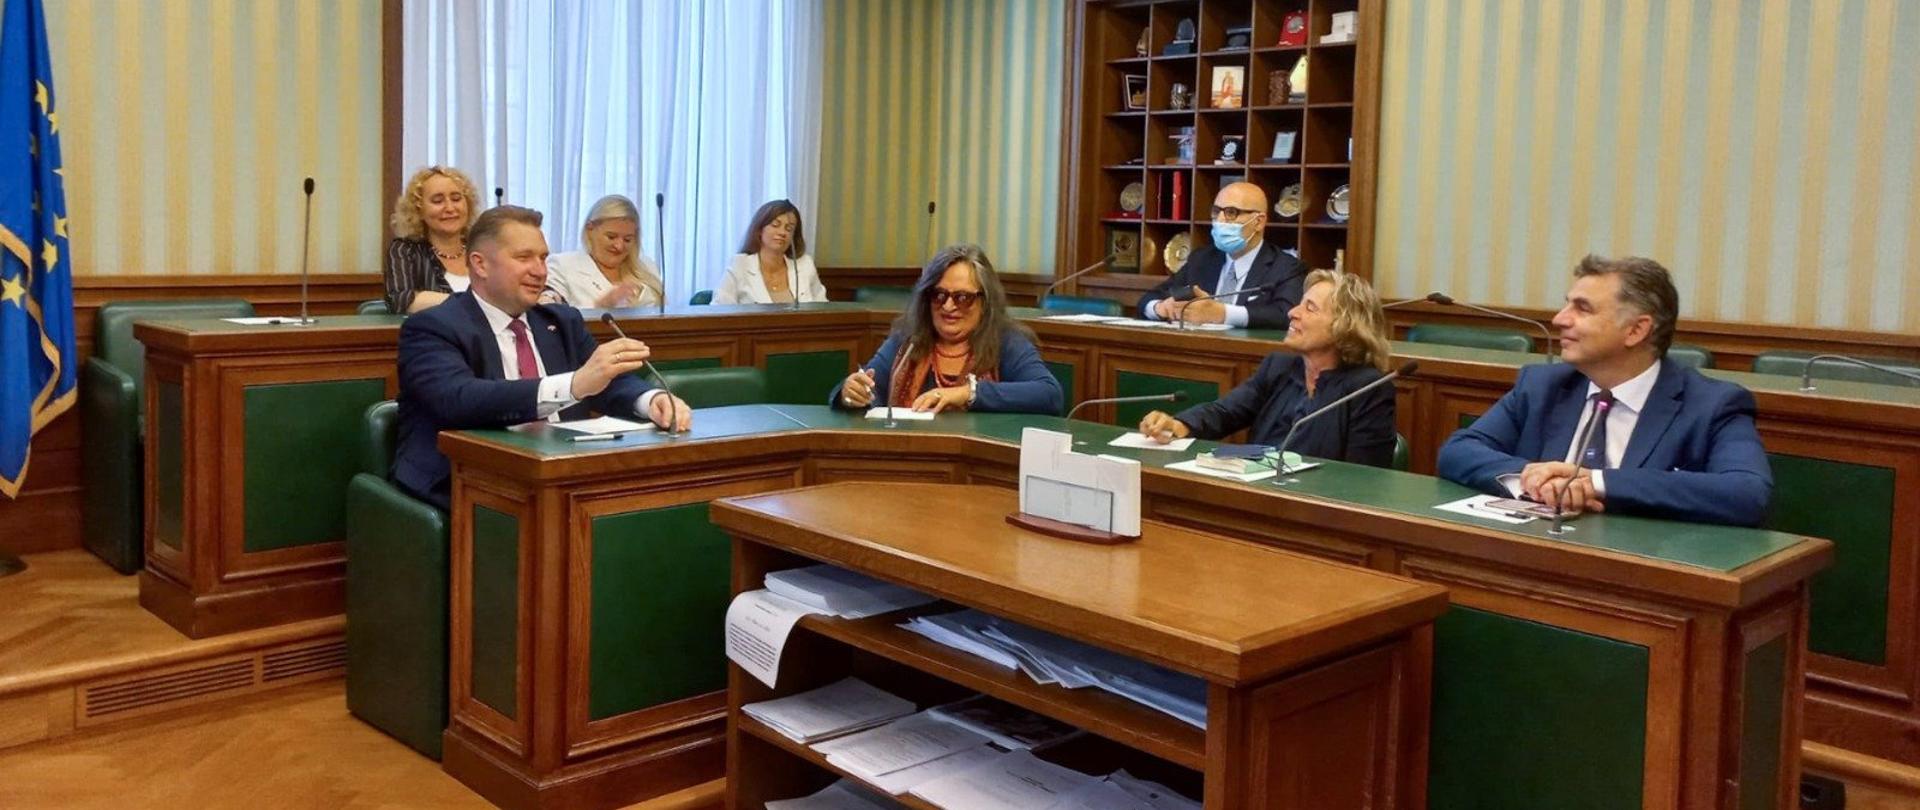 Il ministro dell’Istruzione della Polonia Przemysław Czarnek ha incontrato il Presidente della Commissione Affari Esteri al Senato della Repubblica Italiana